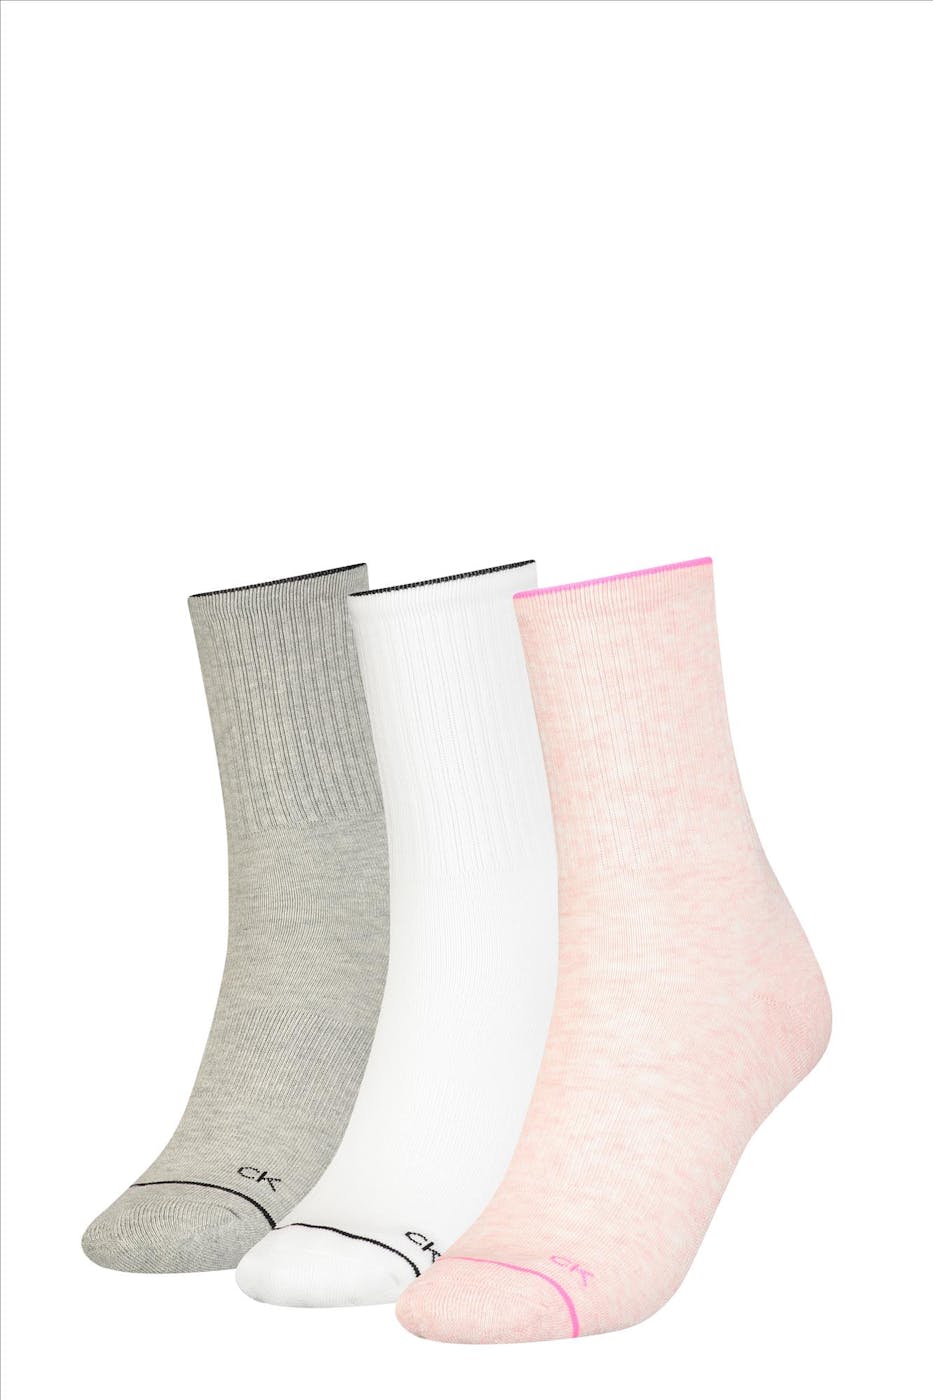 Broers en zussen schelp schade Calvin Klein - Roze-witte-grijze 3-pack sokken, one size